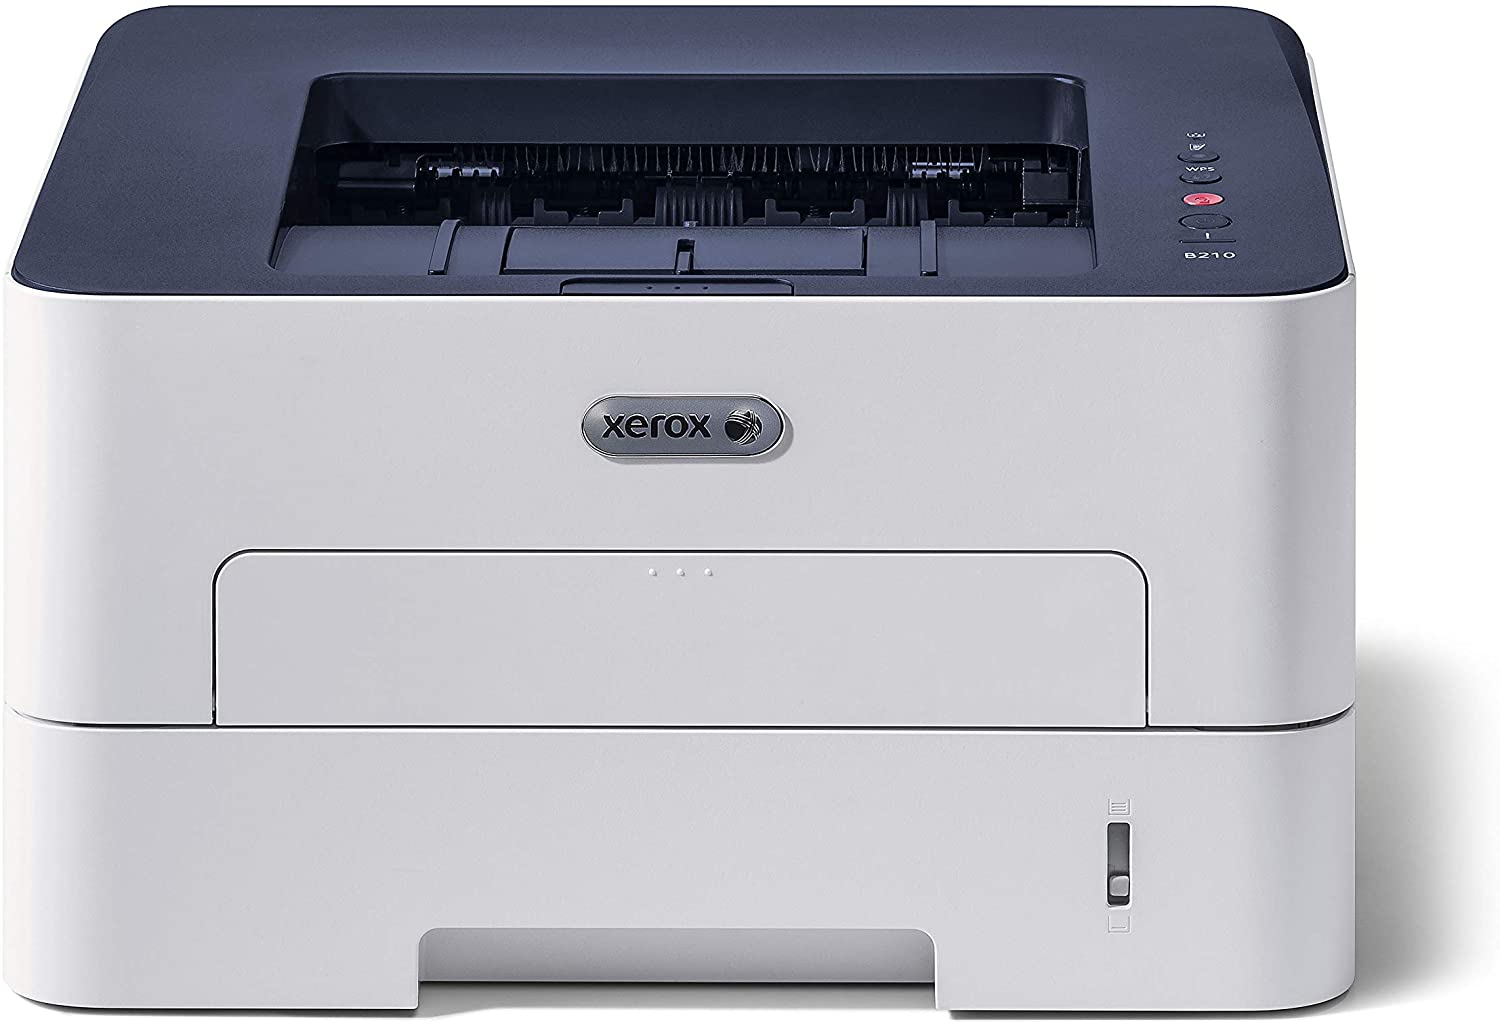 Migliori stampanti laser - Xerox B210